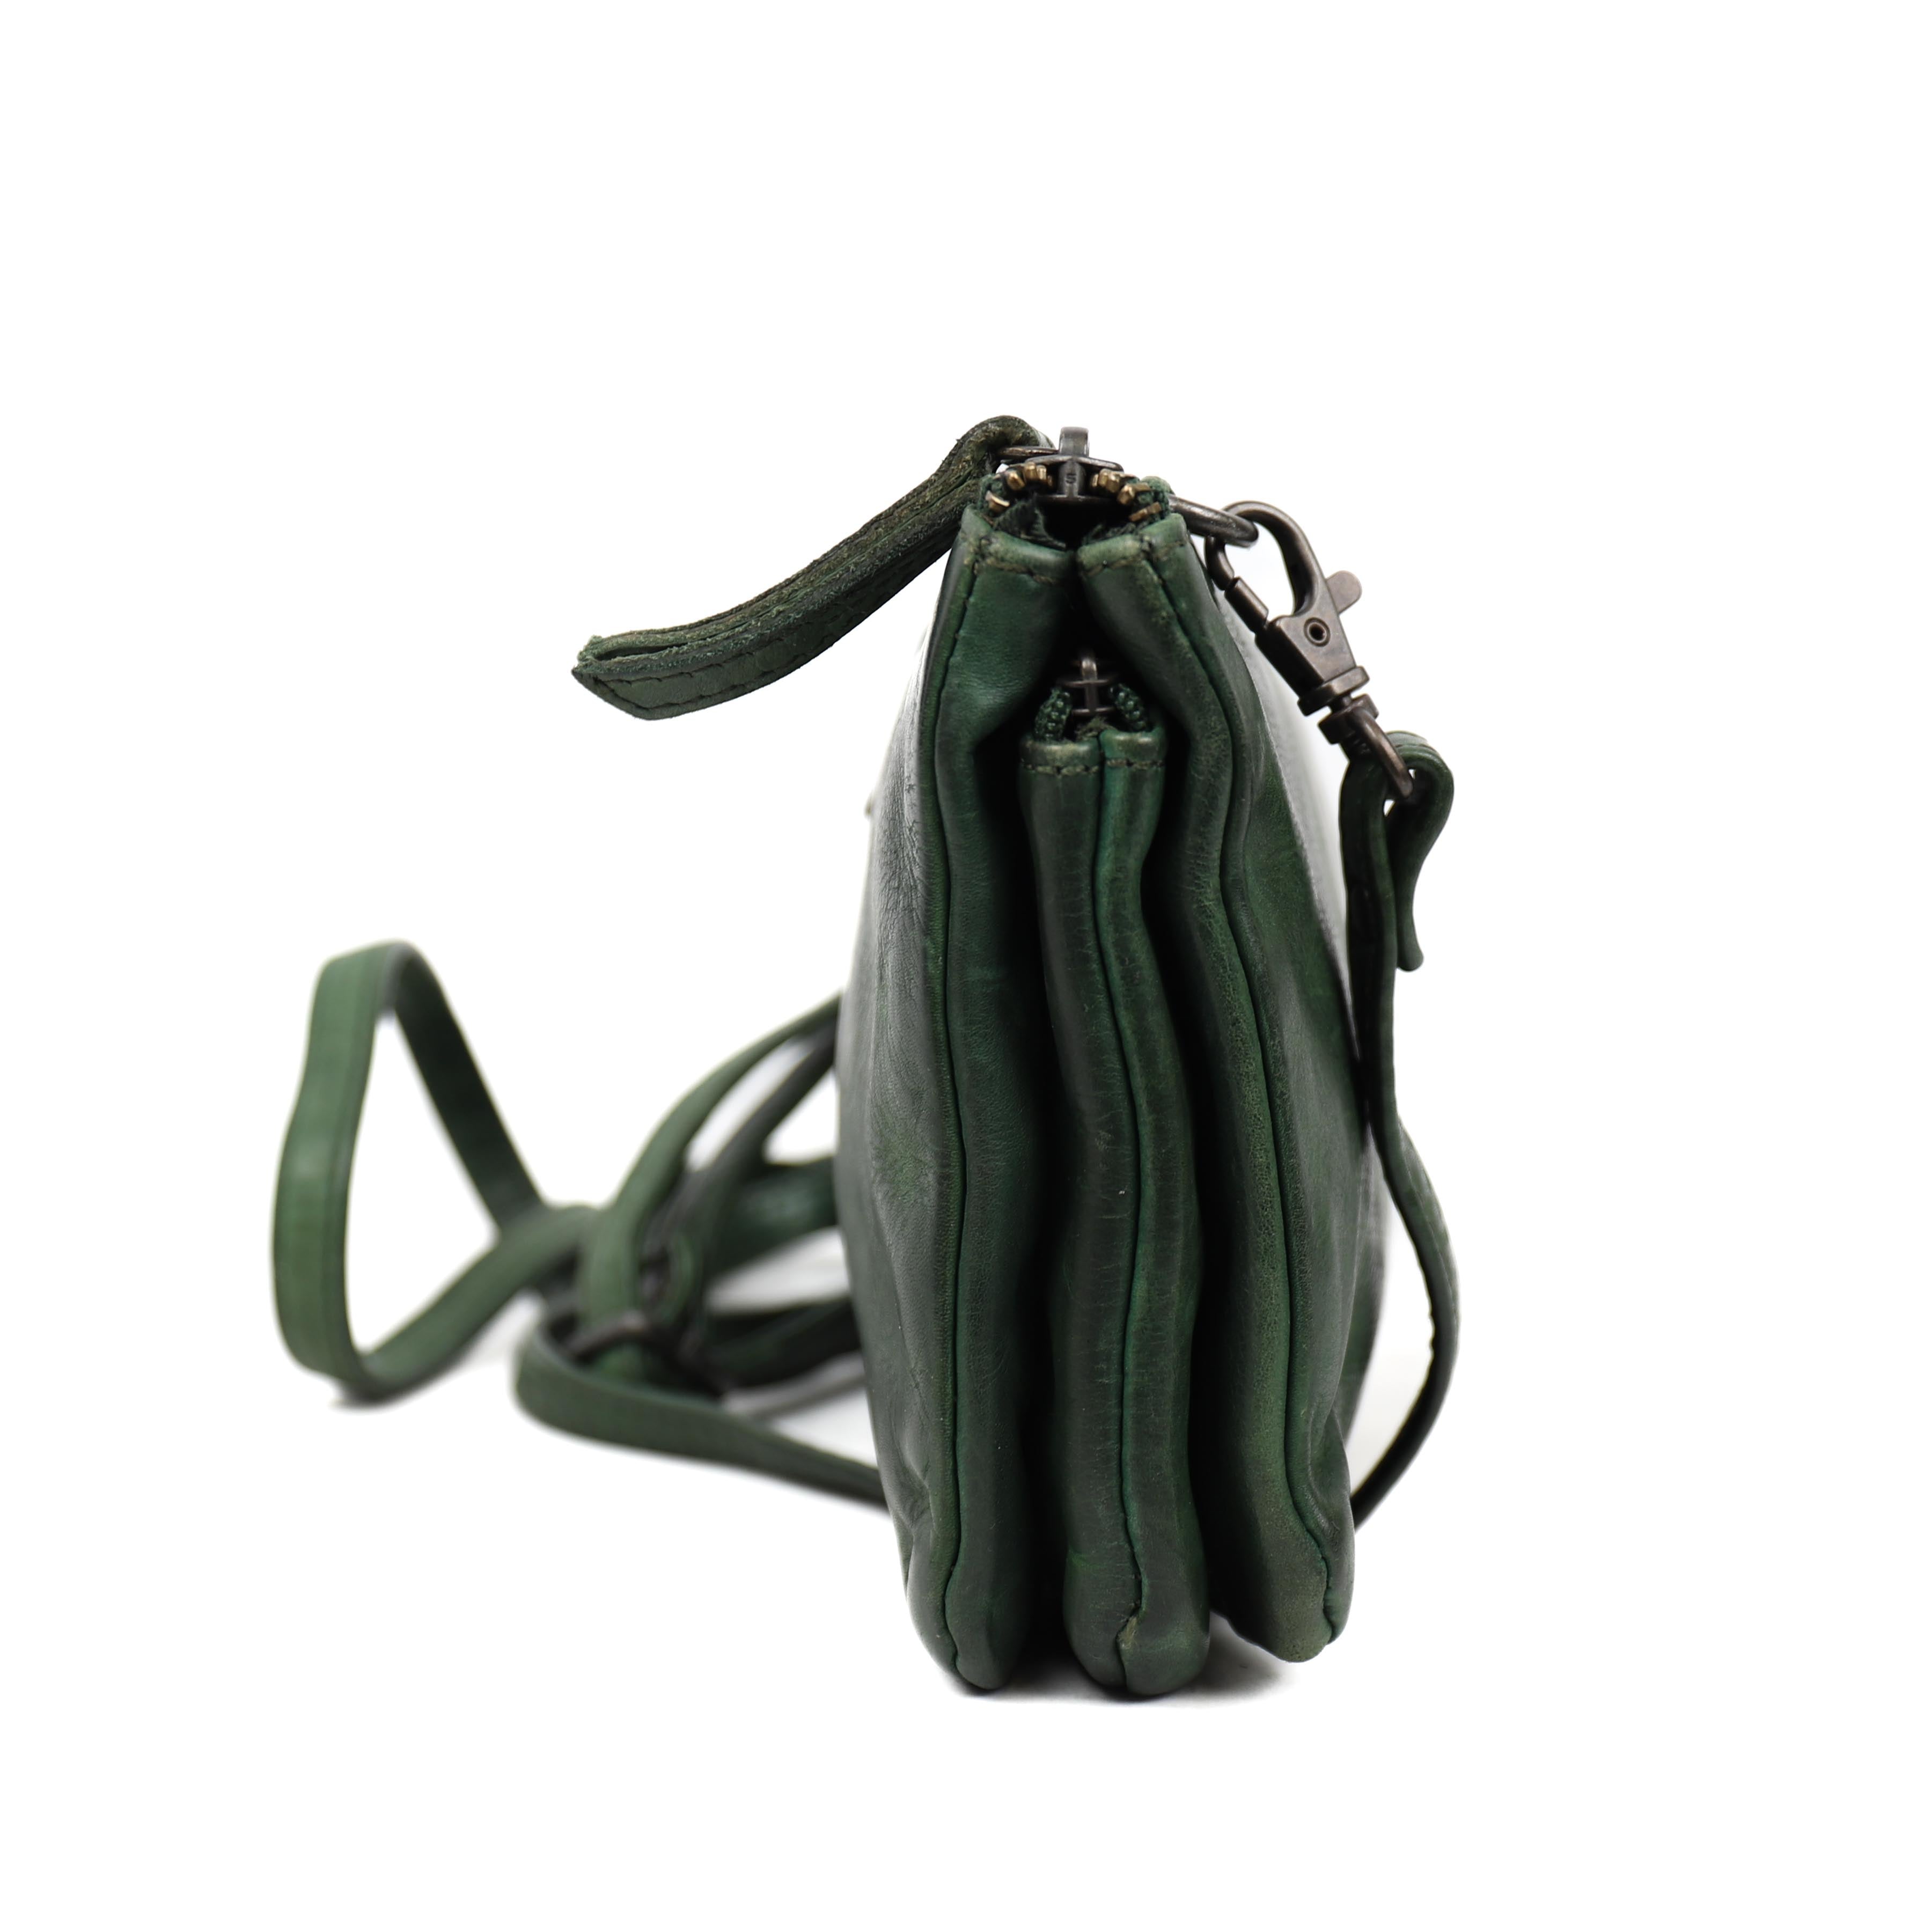 Purse bag 'Uma' green - CL 30996